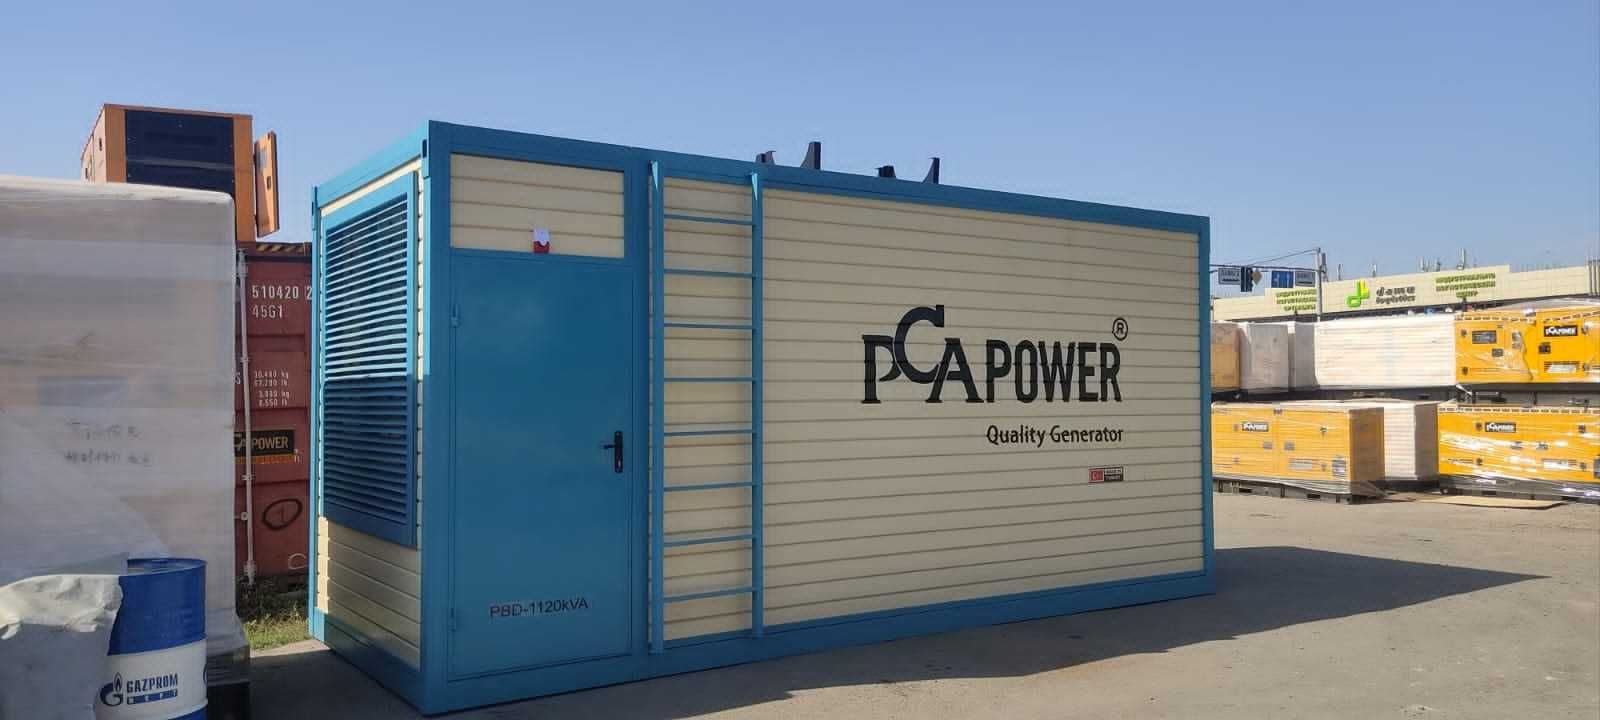 Дизель генераторы «PCA POWER»  с расширенной гарантией от 18 месяцев.